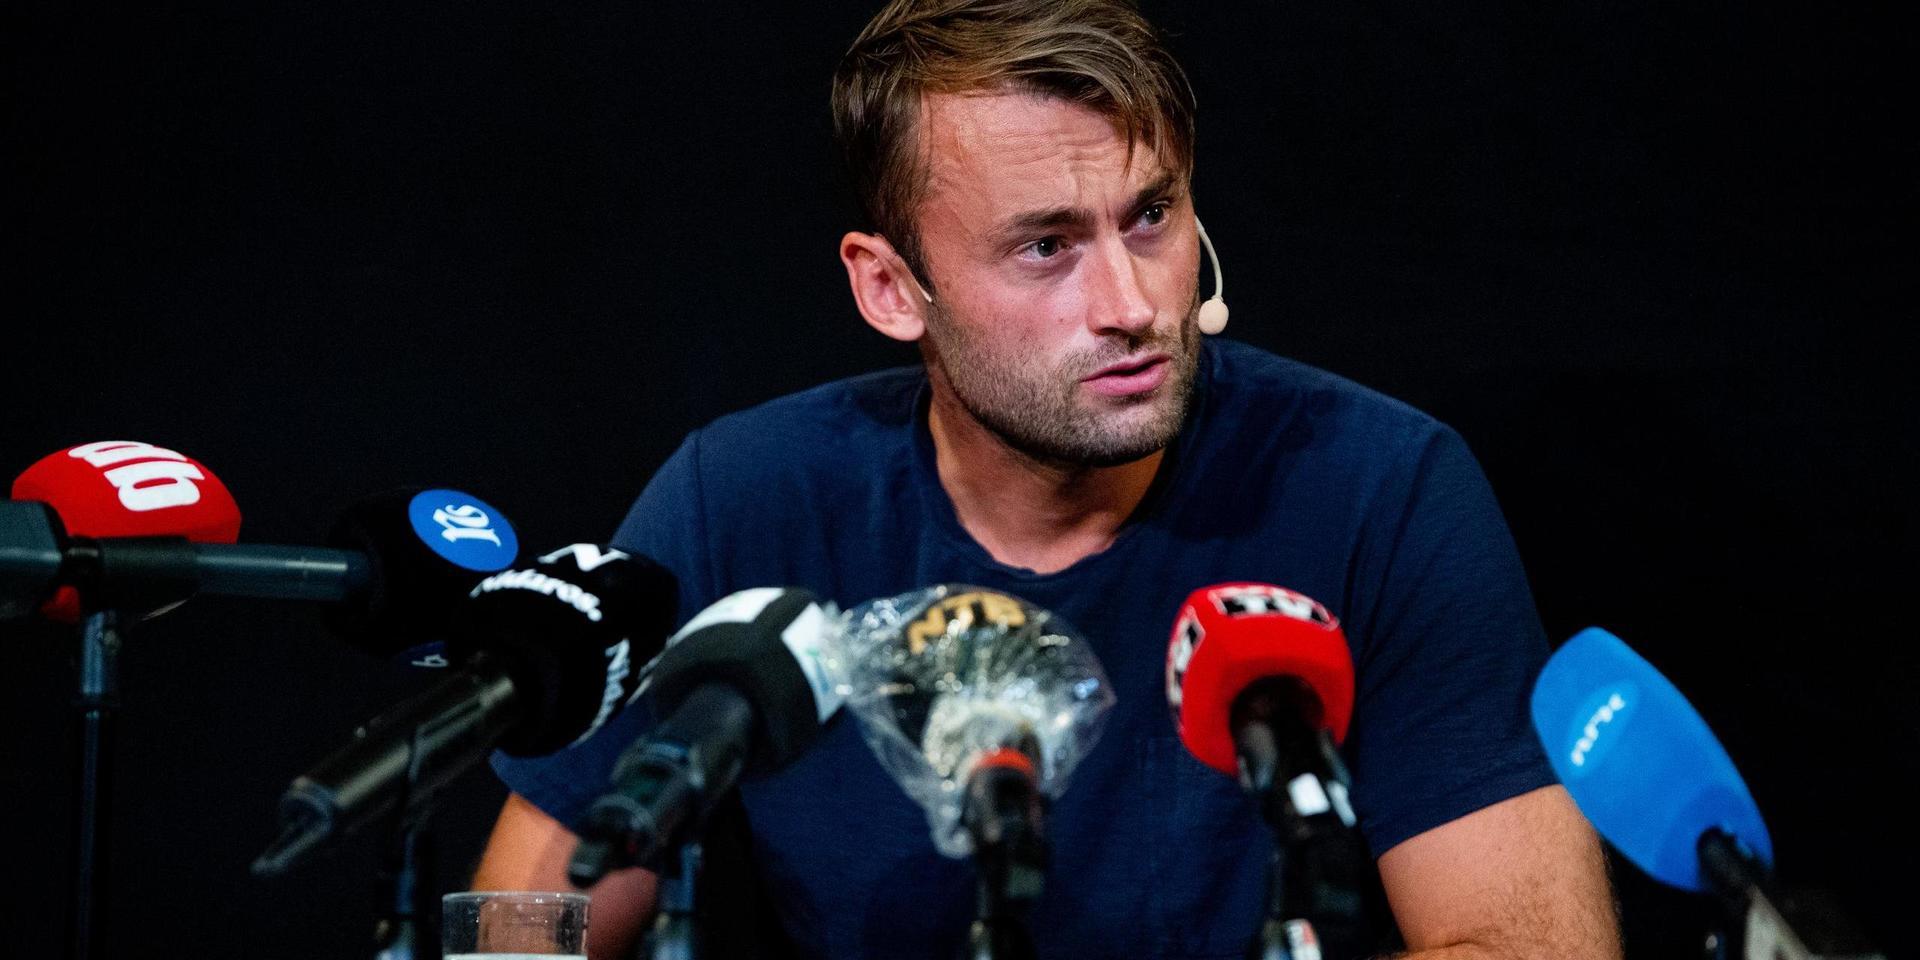  Petter Northug under presskonferensen den 21 augusti 2020 efter att han dagarna tidigare gripits av norsk polis. 